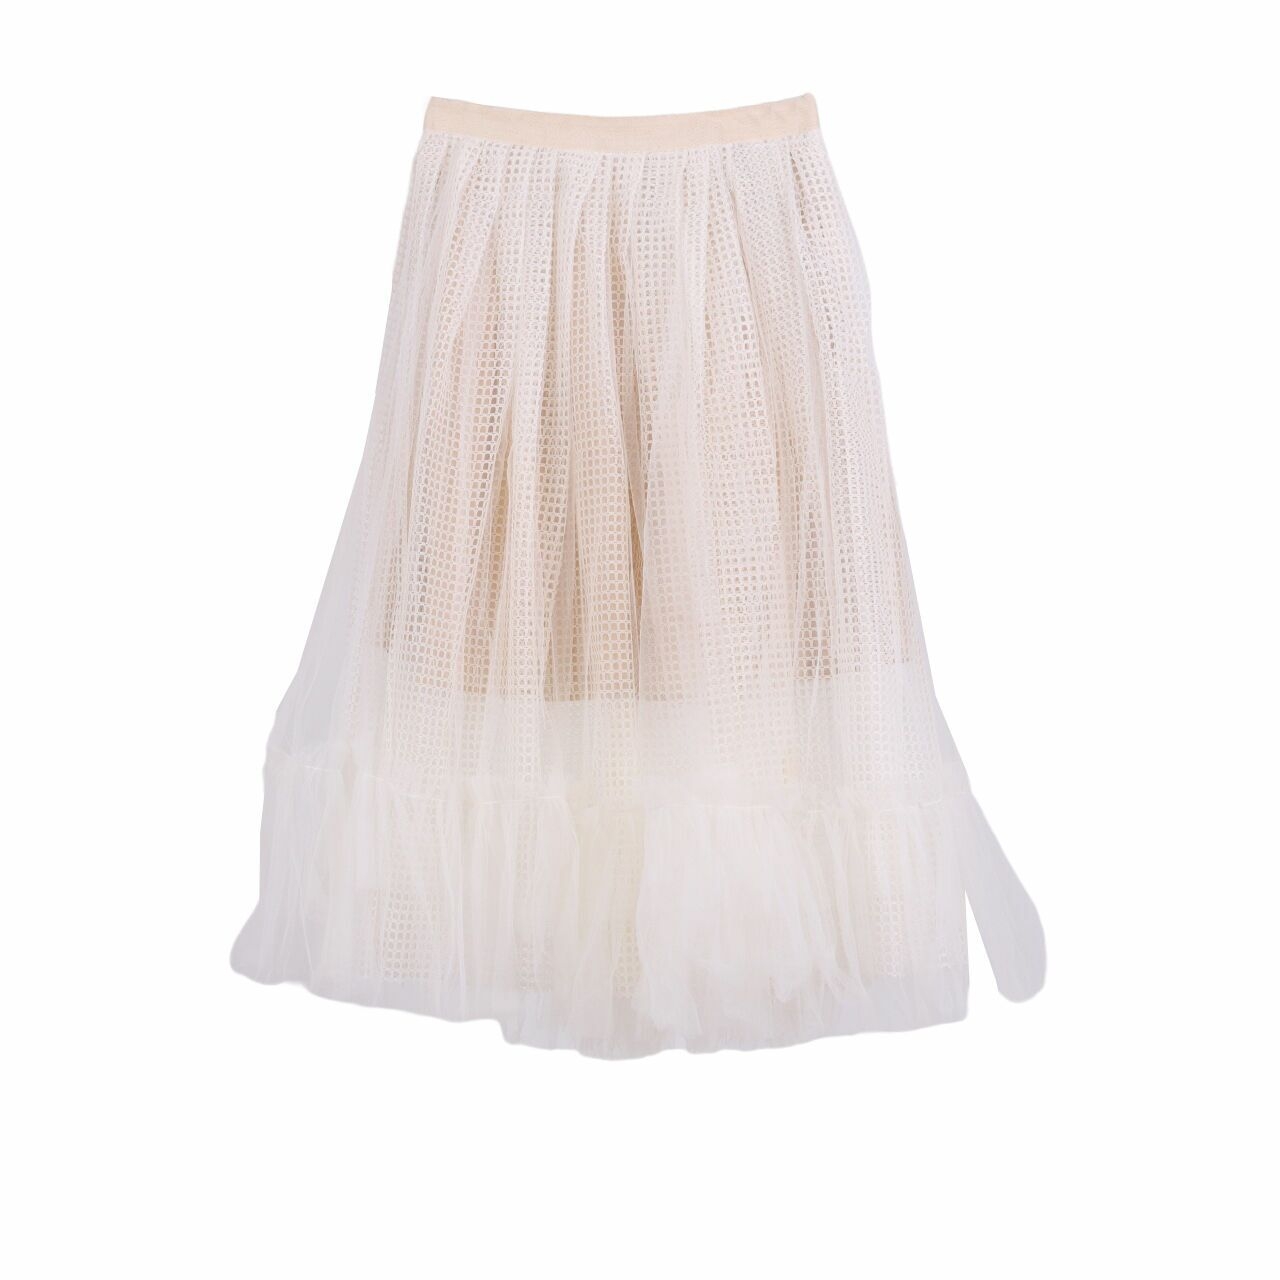 Sho Off White Mini Skirt